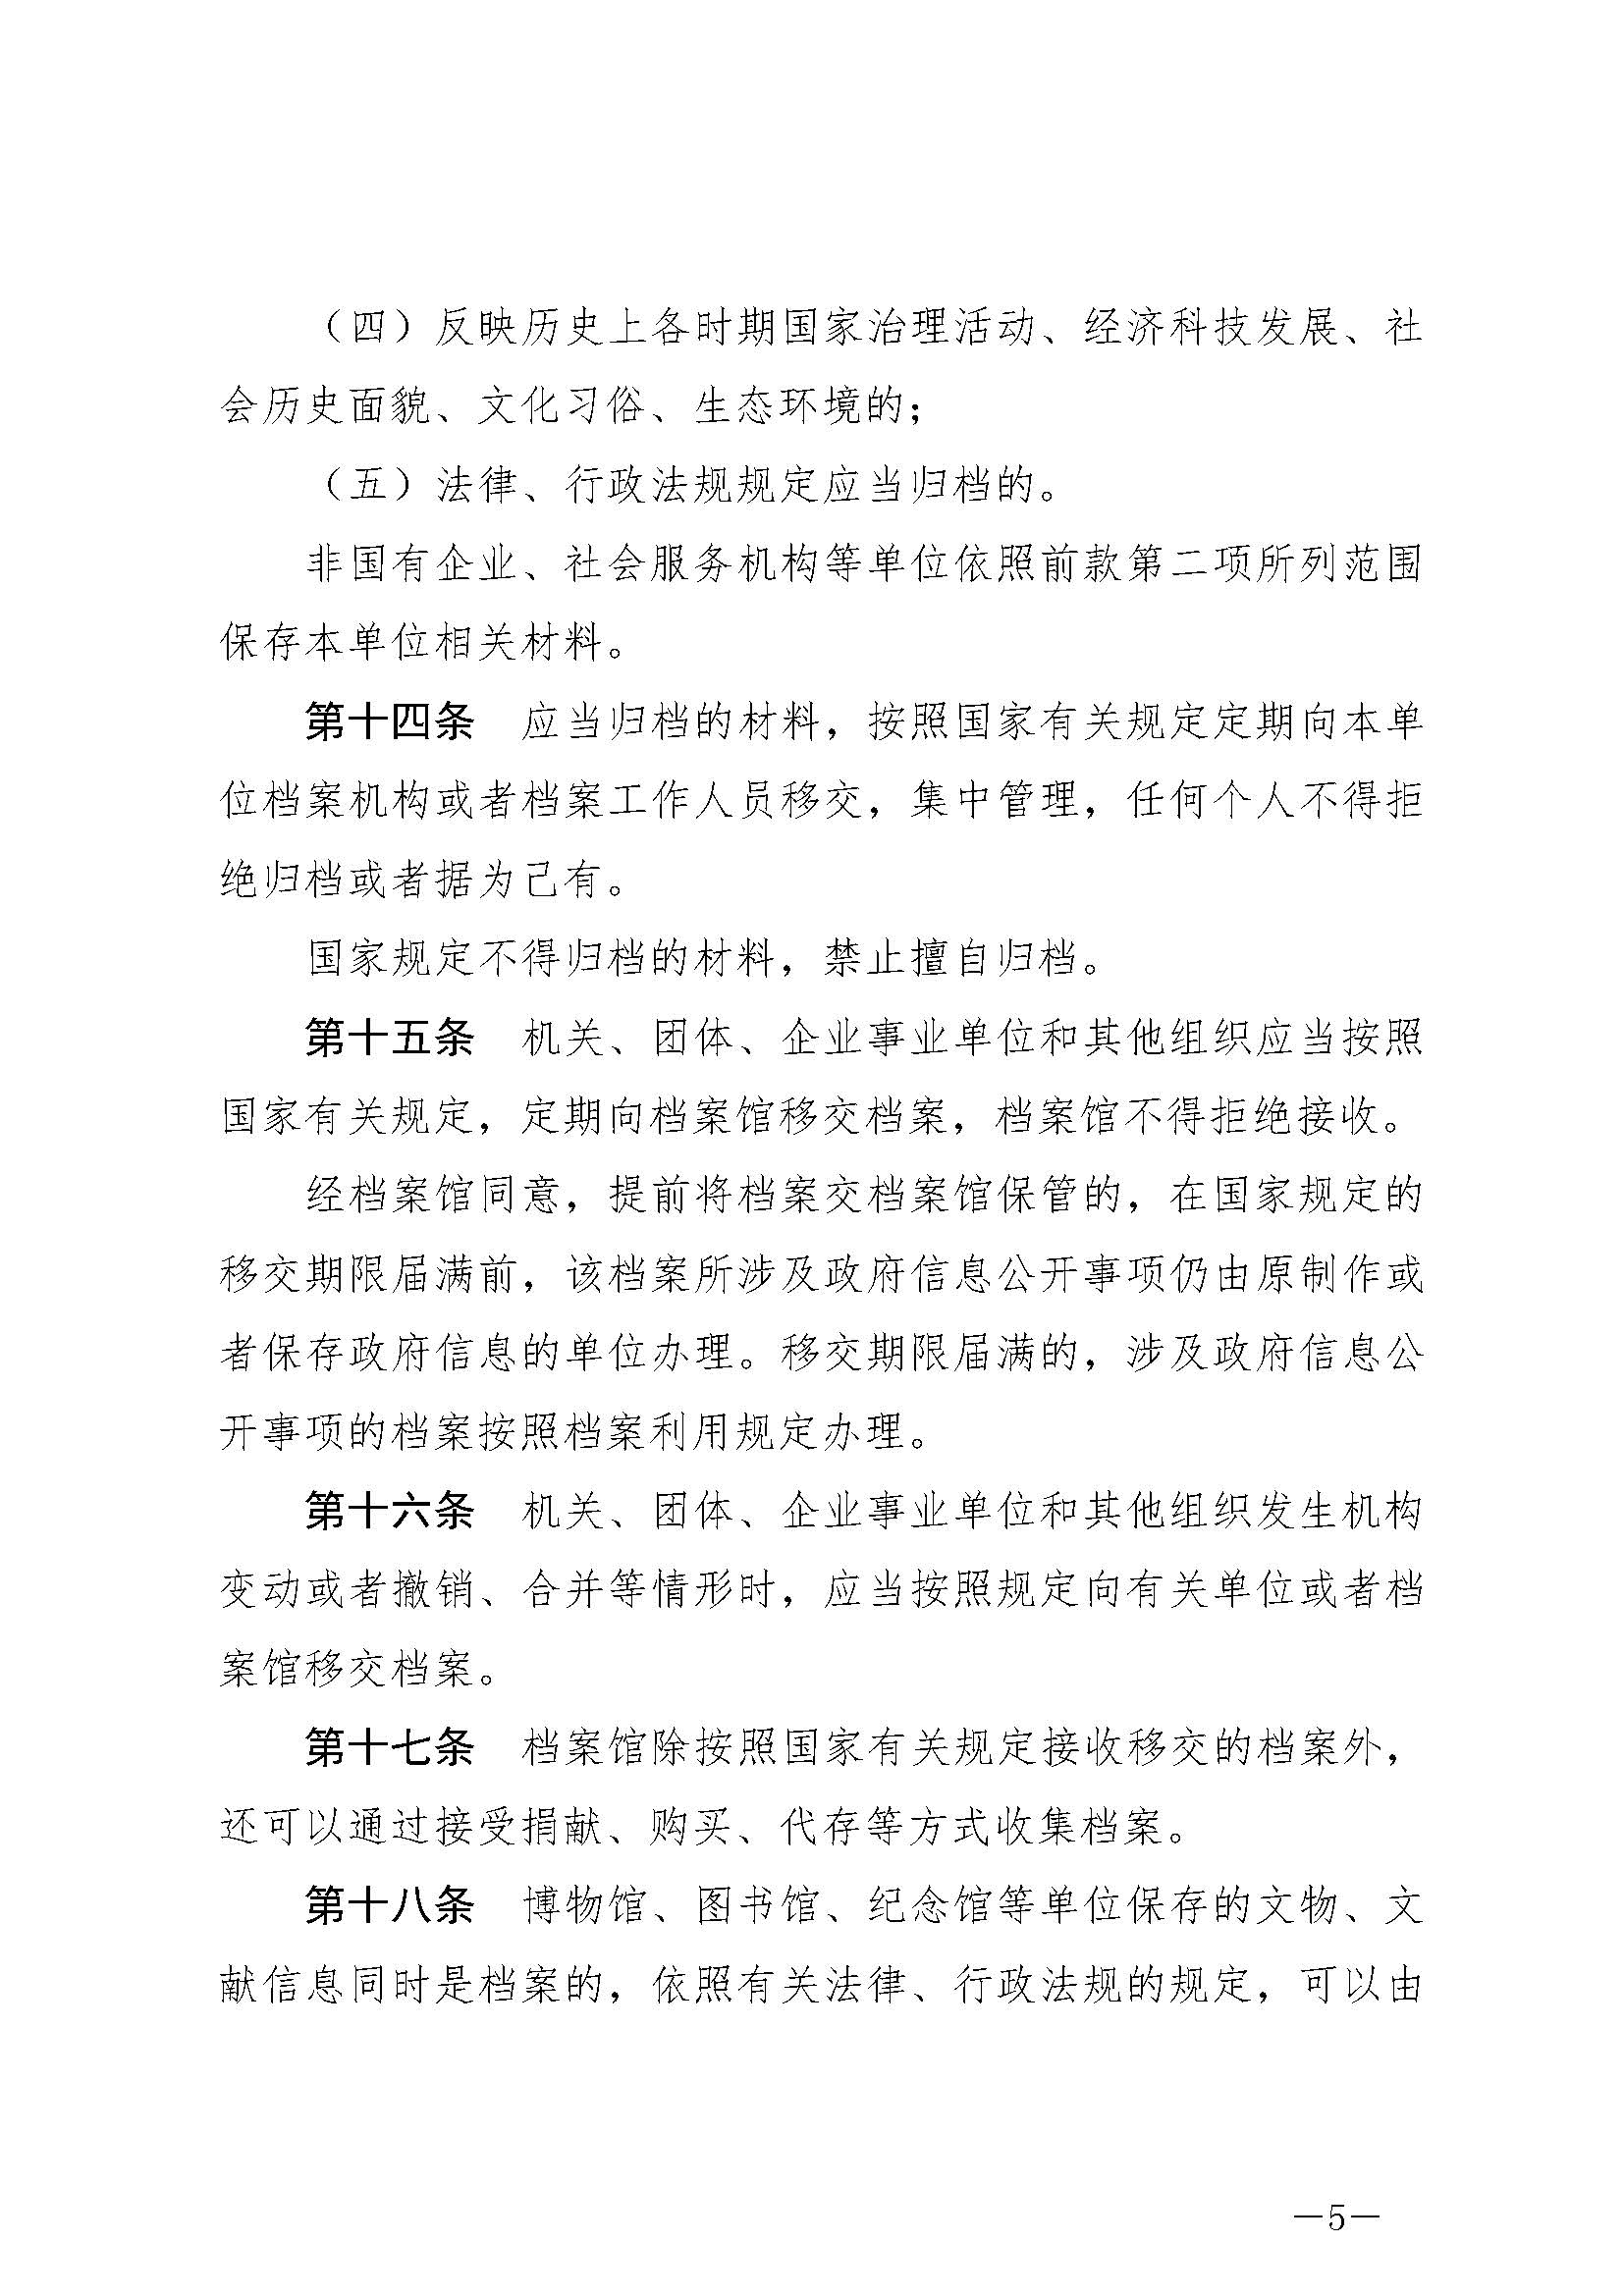 《中华人民共和国档案法》_页面_05.jpg